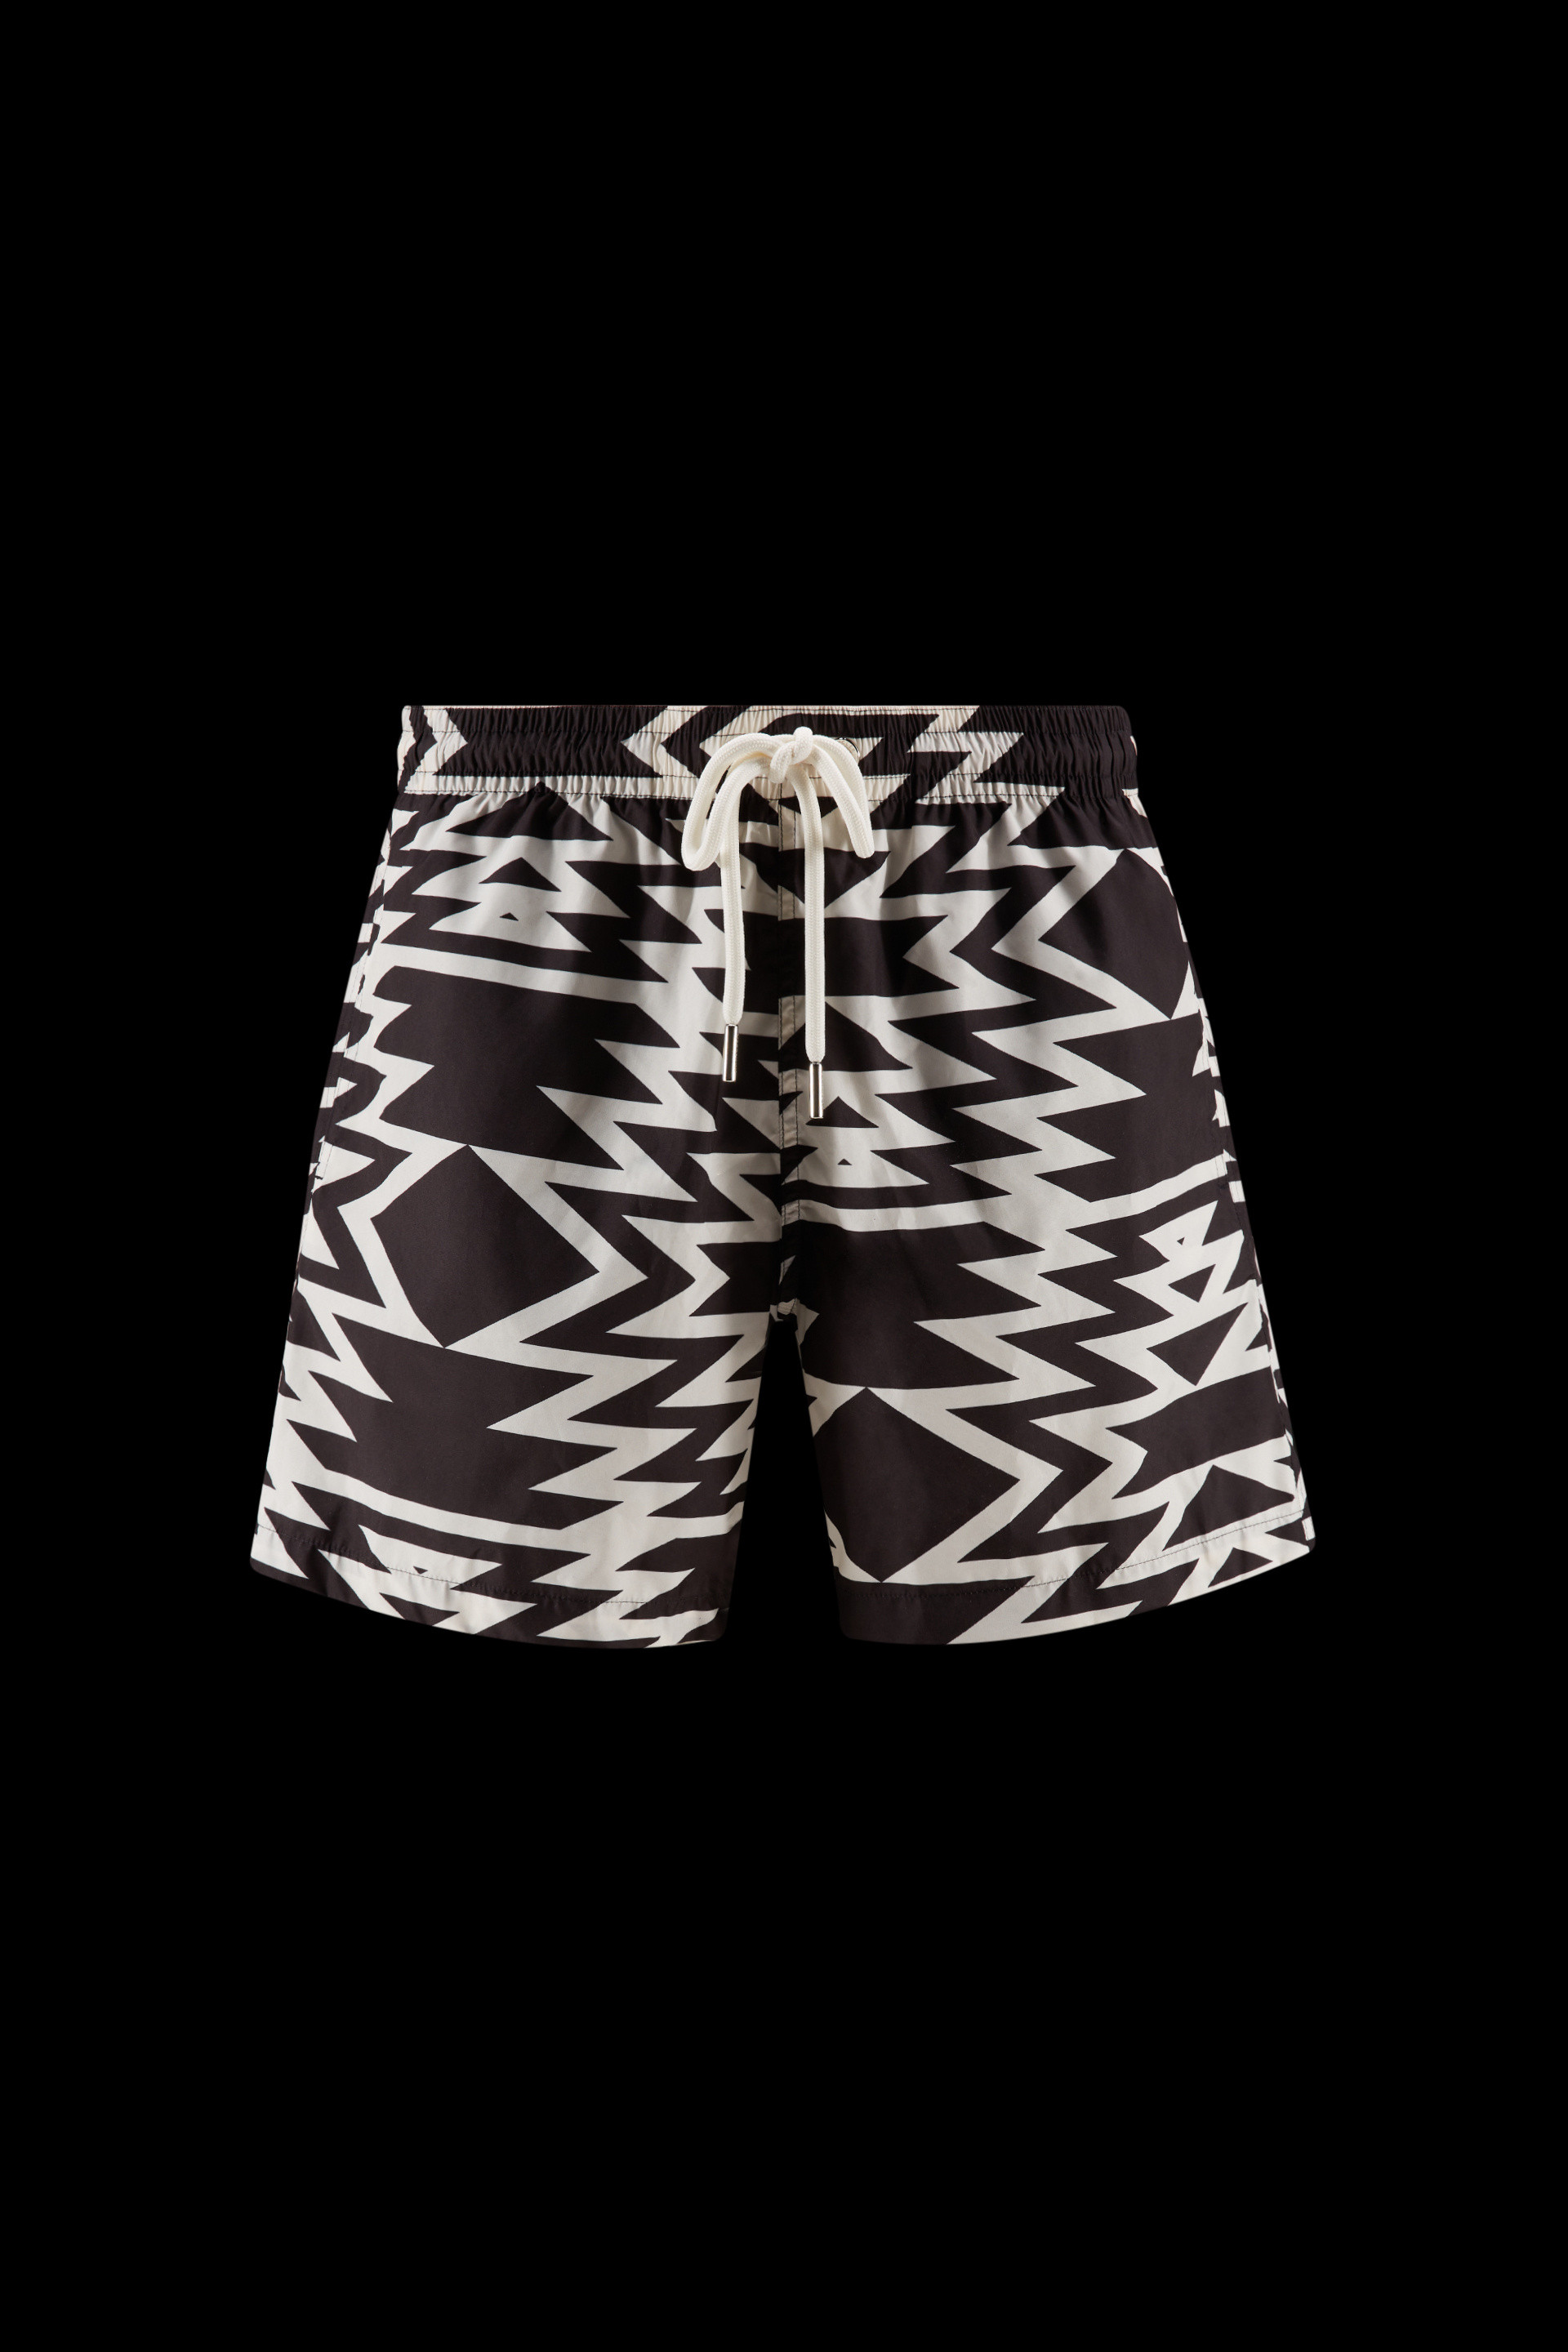 Swimwear for Men - Swimming Trunks & Shorts | Moncler US